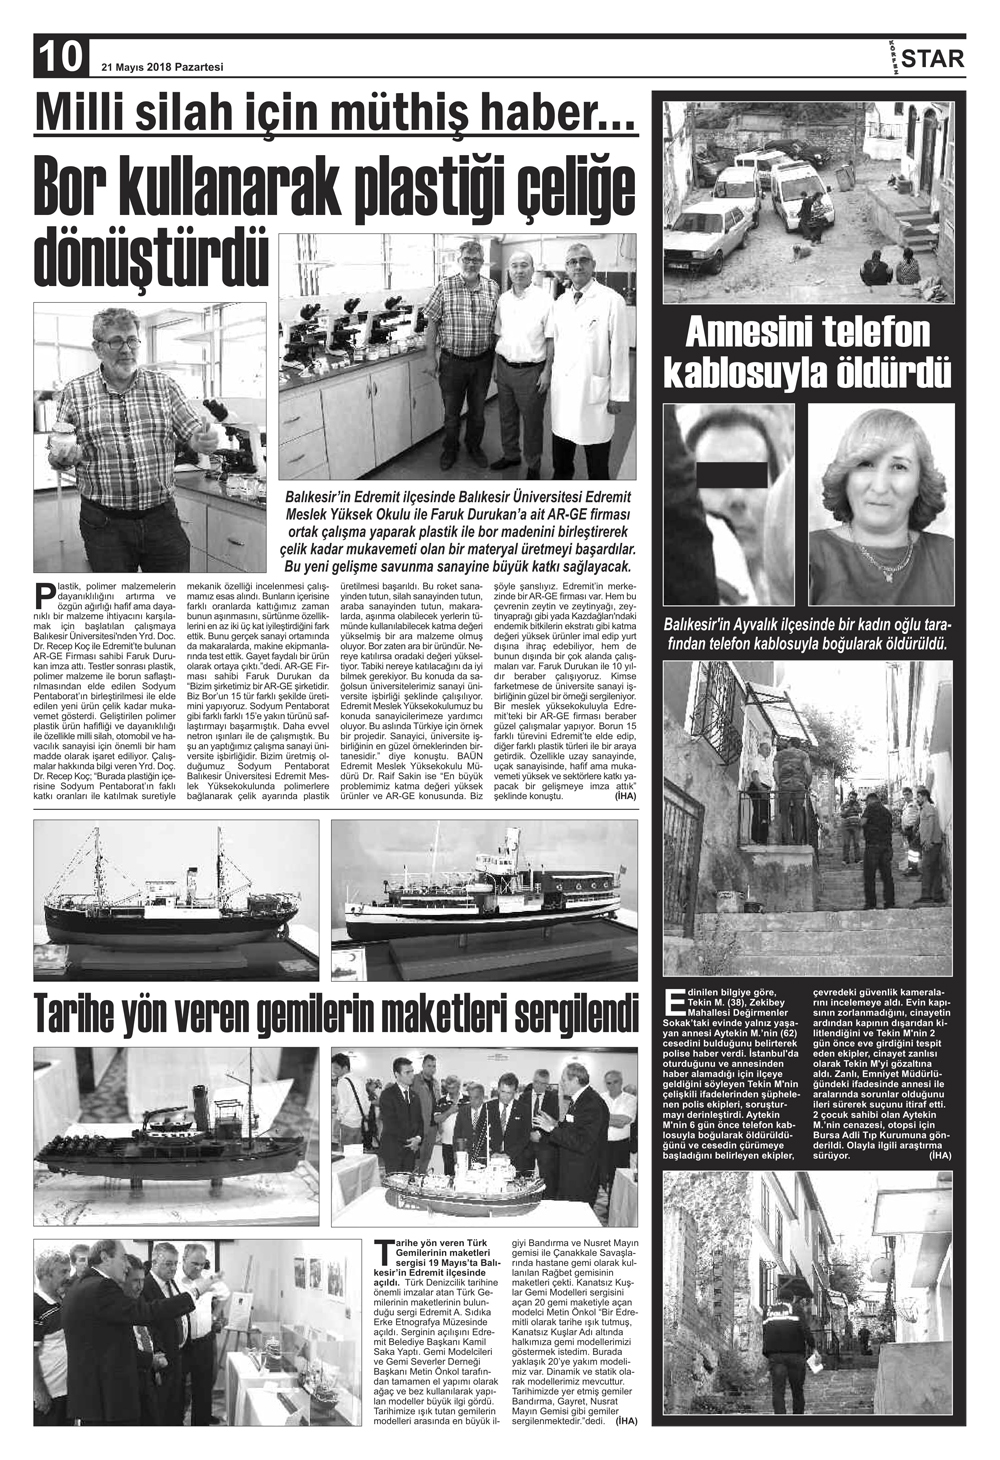 21052018-tarihli-gazetemiz-1118-05-20123616.jpg